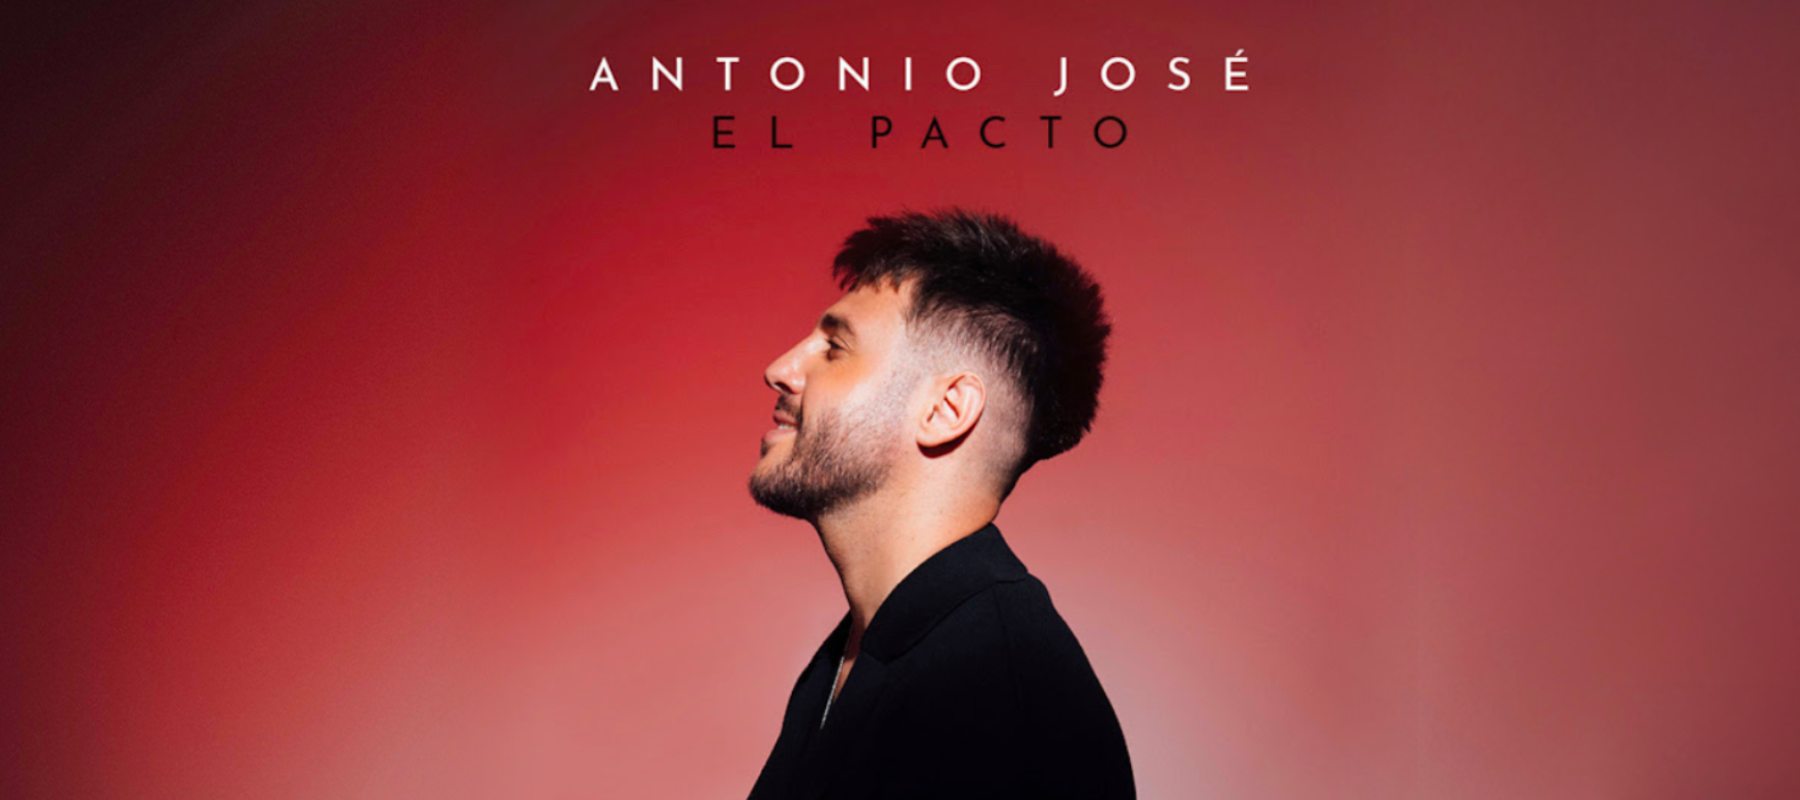 Antonio José lanza su nuevo disco - EL PACTO - Antonio José